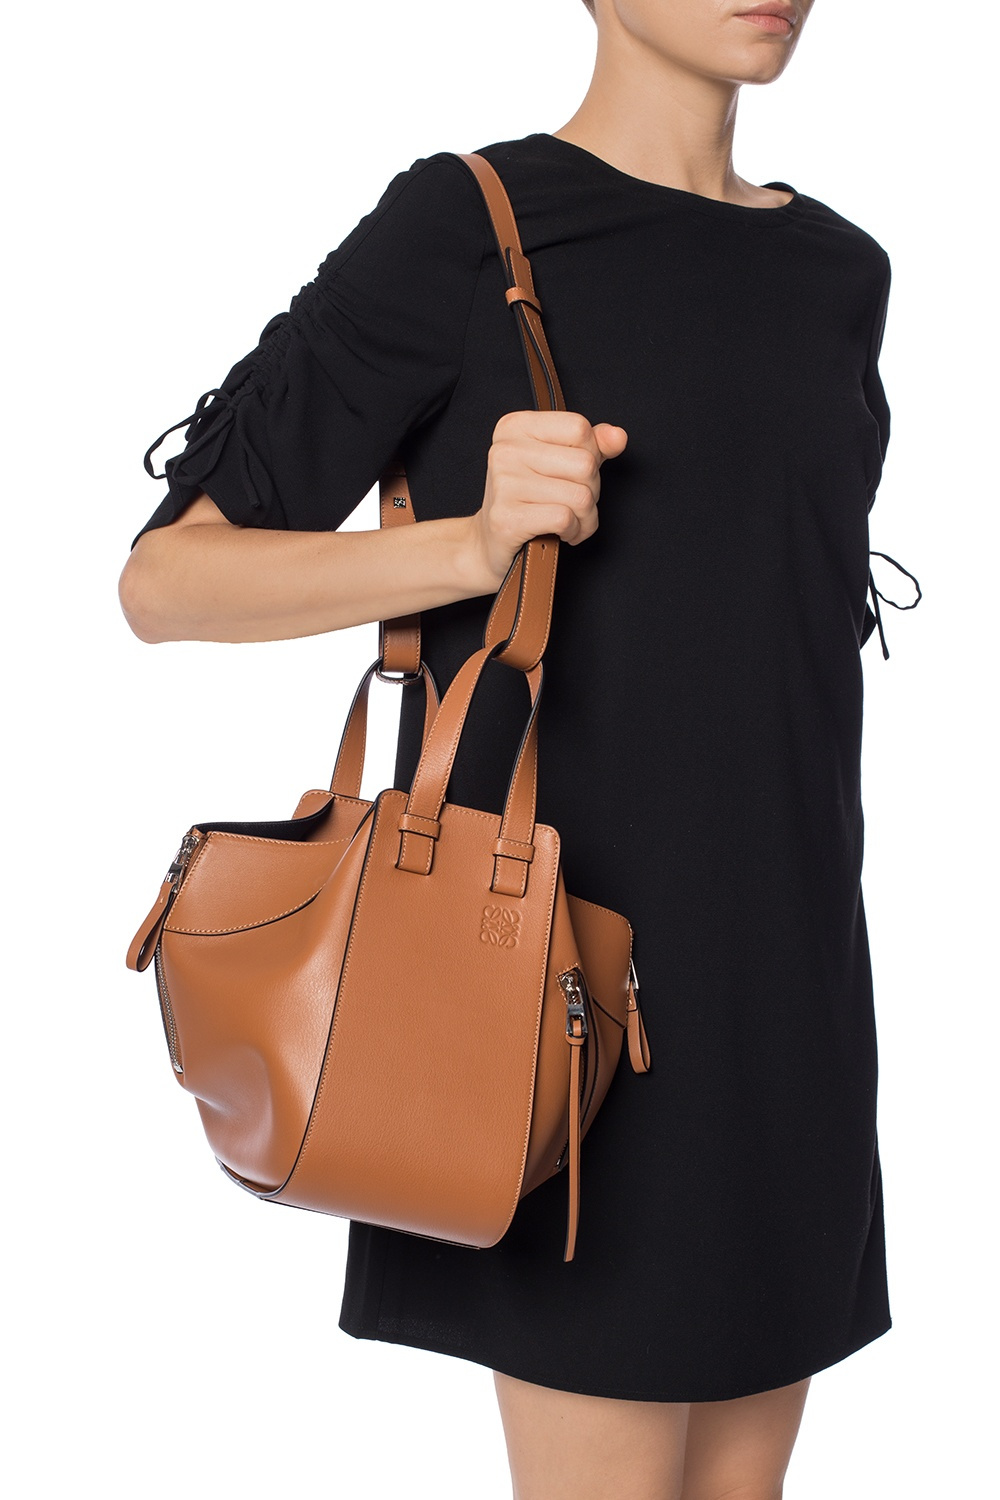 Hammock Small Leather Shoulder Bag in Brown - Loewe